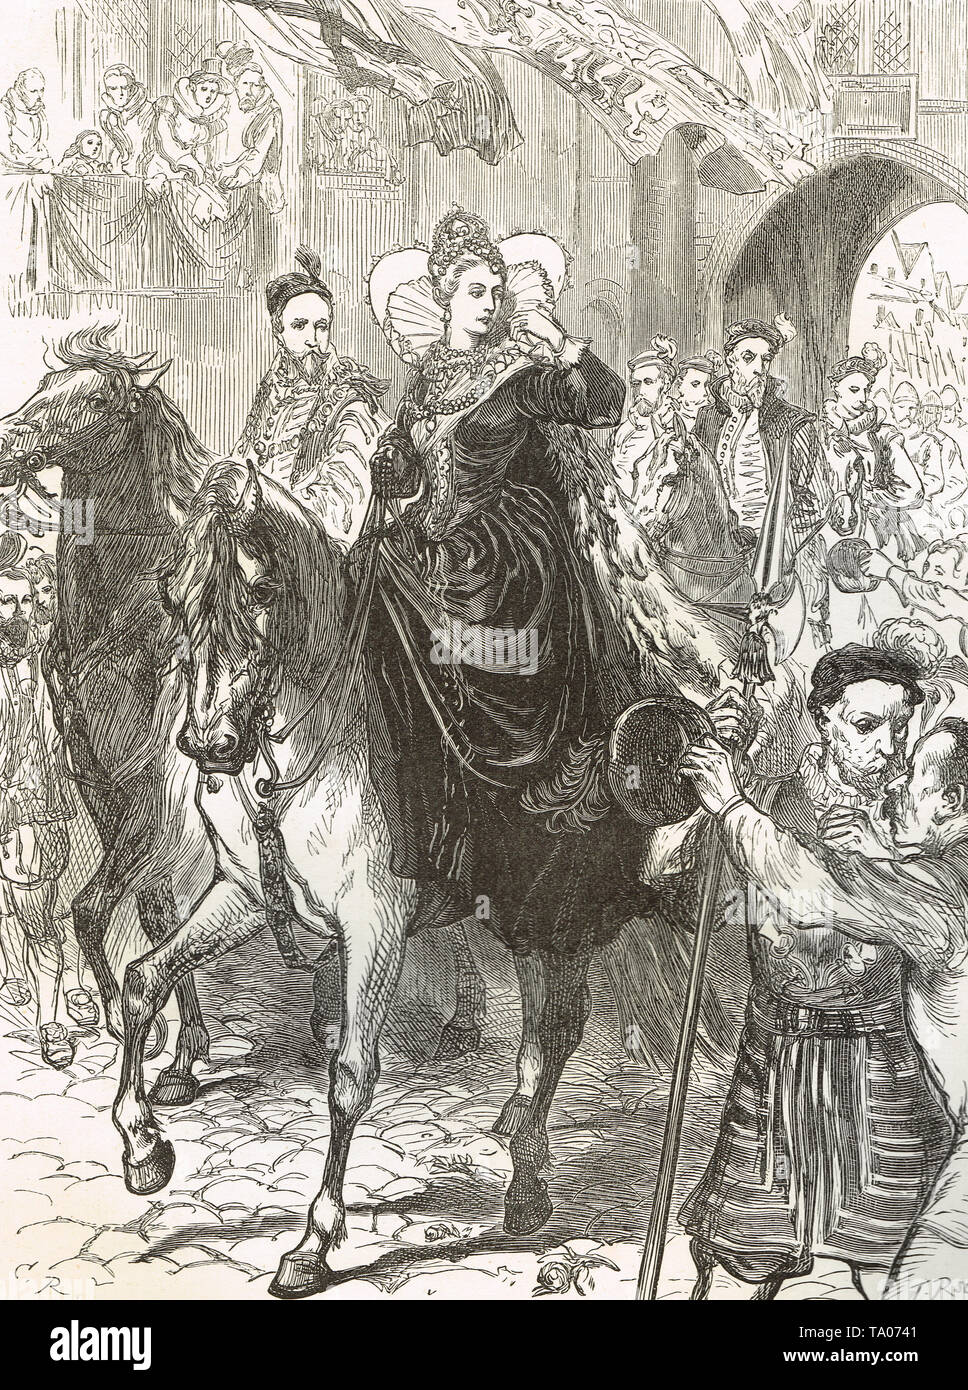 Isabel I,entrando en Londres, a caballo, en 1558 de 25 años de edad Foto de stock